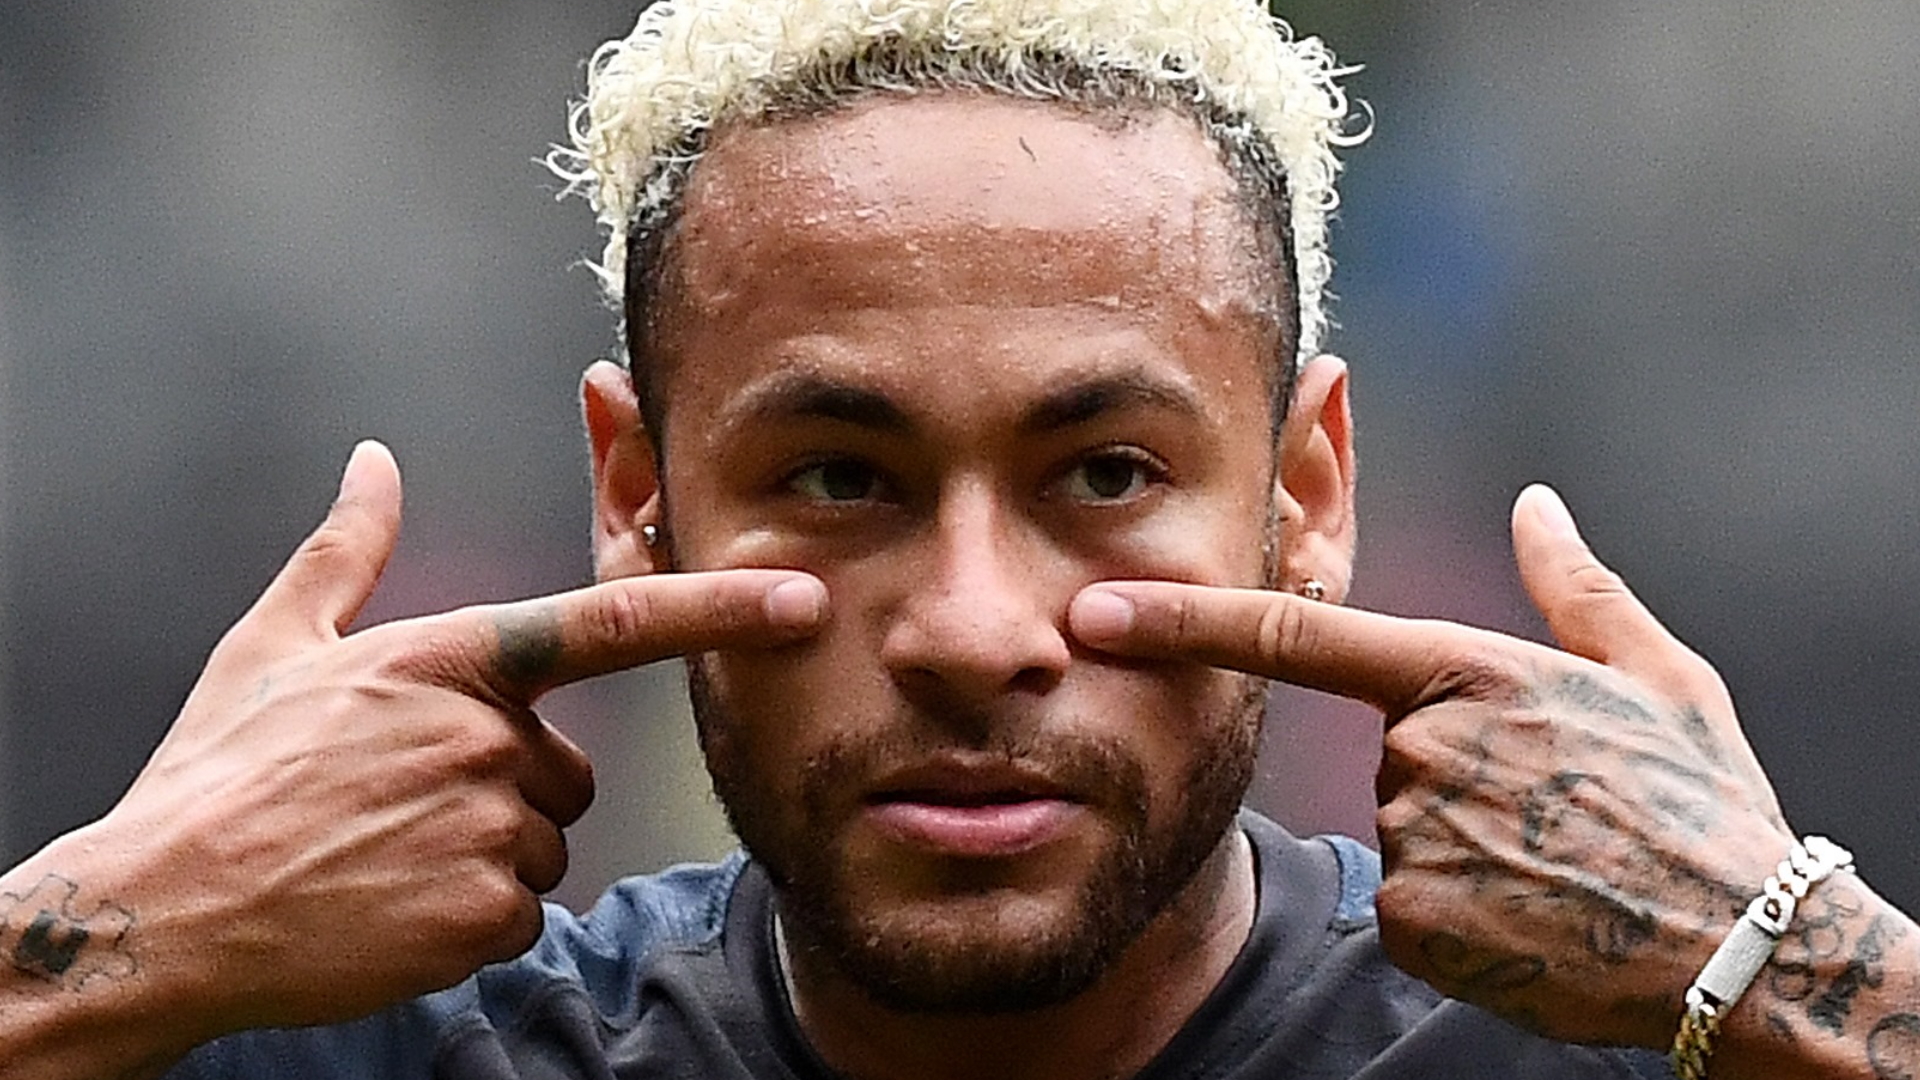 PSG - Entre Neymar et les supporters, il faudra apaiser les tensions